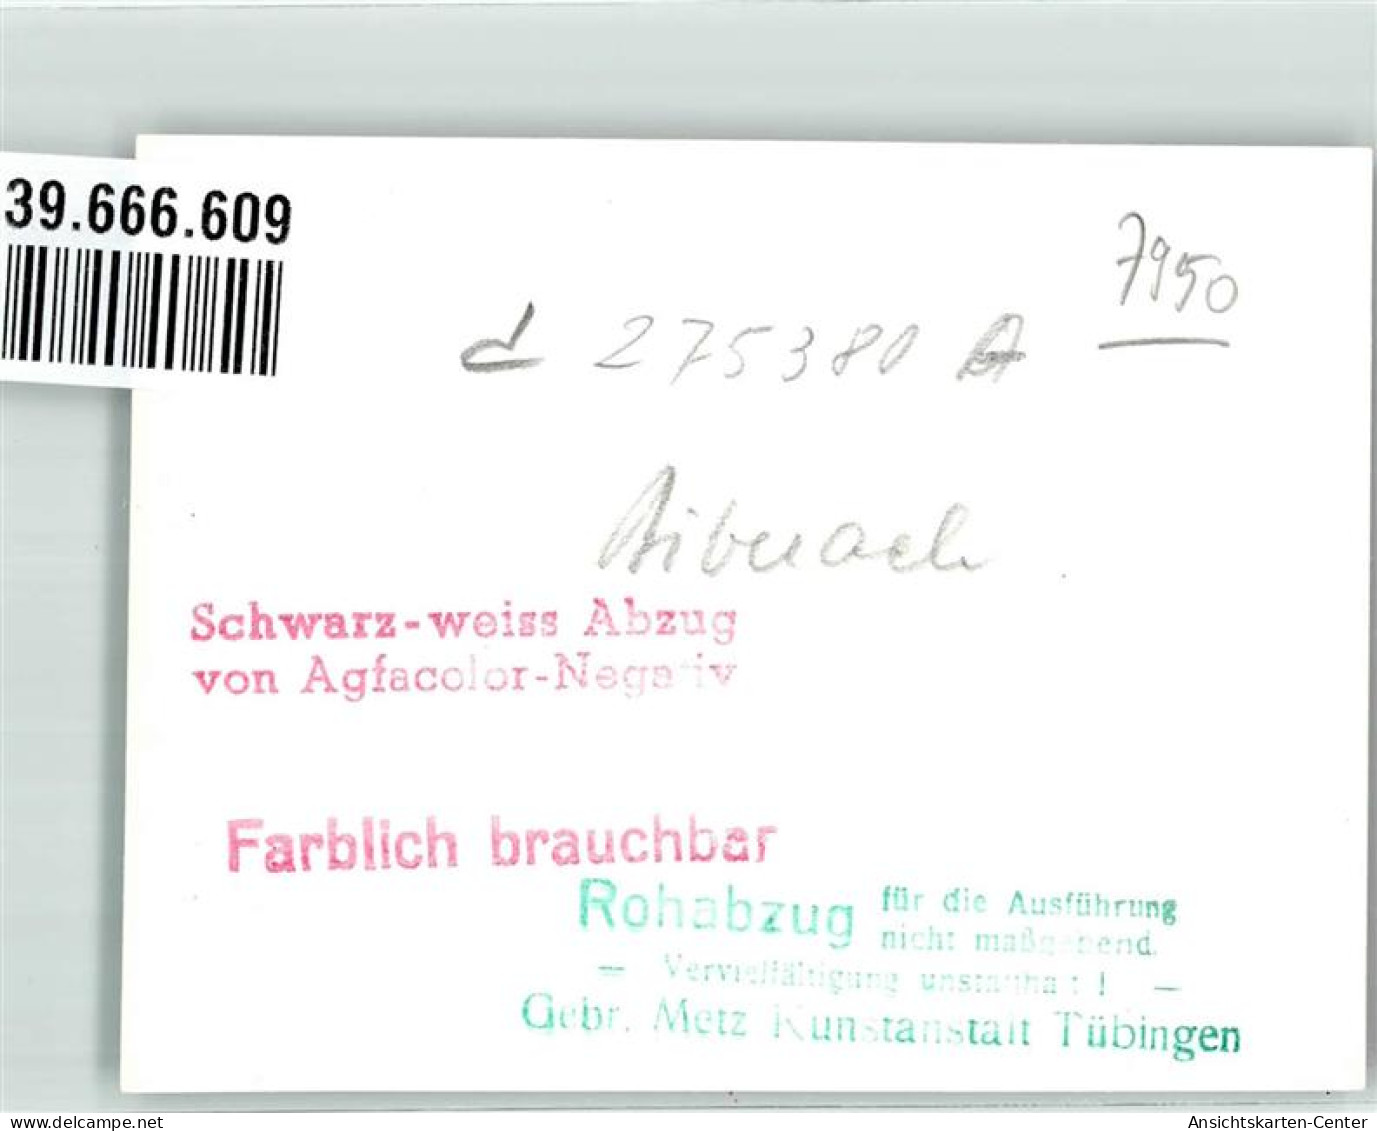 39666609 - Biberach An Der Riss - Biberach